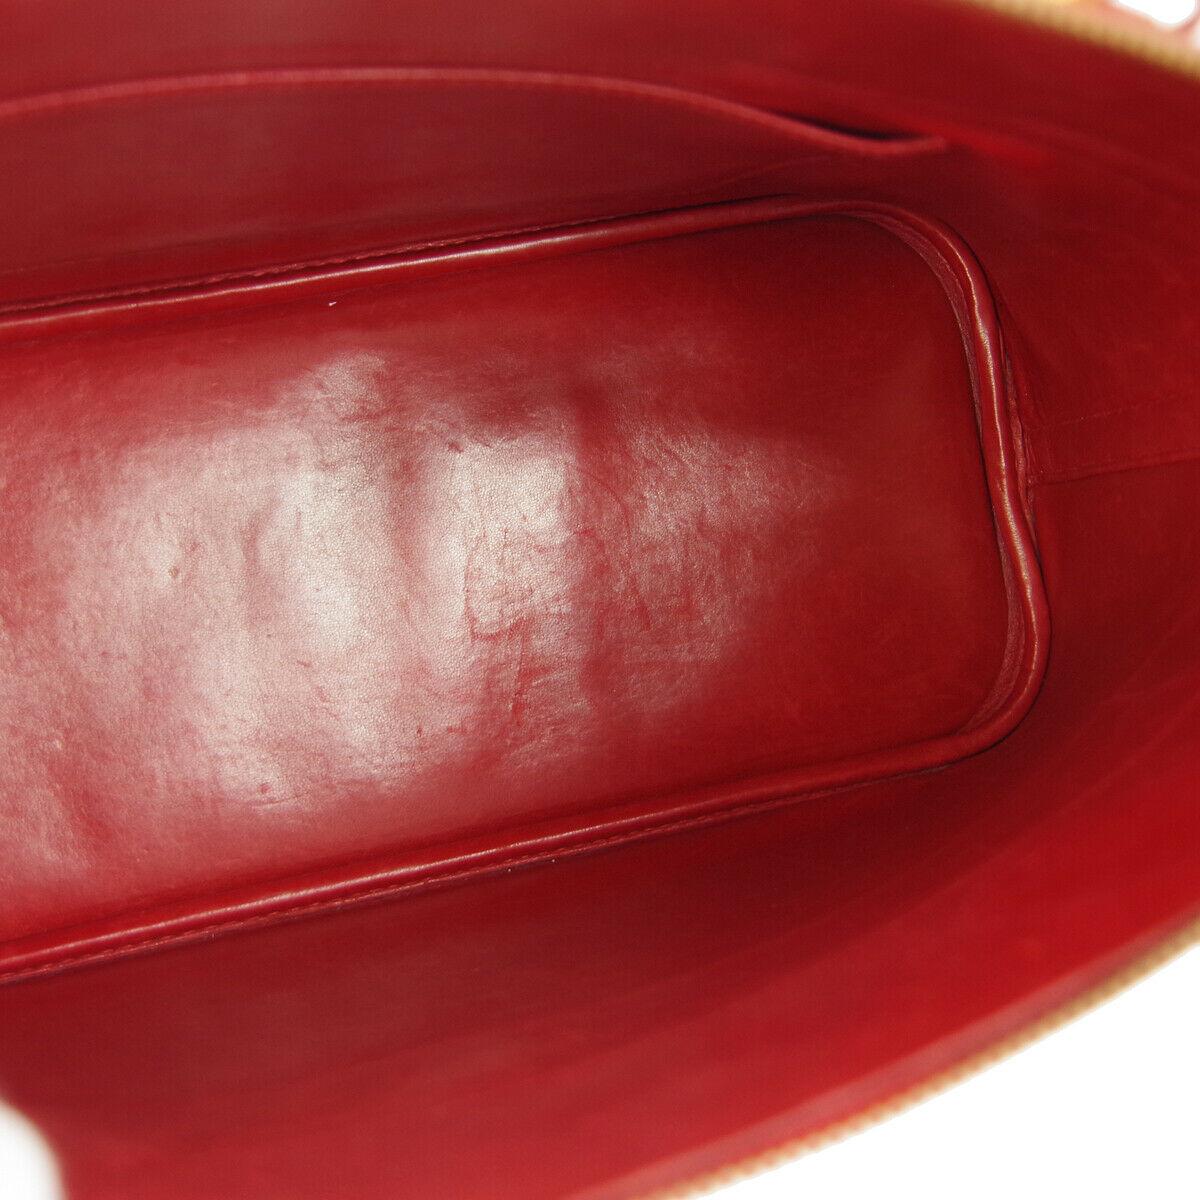 Hermes Red Leather Gold Top Handle Satchel Carryall Travel Shoulder Tote Bag 2